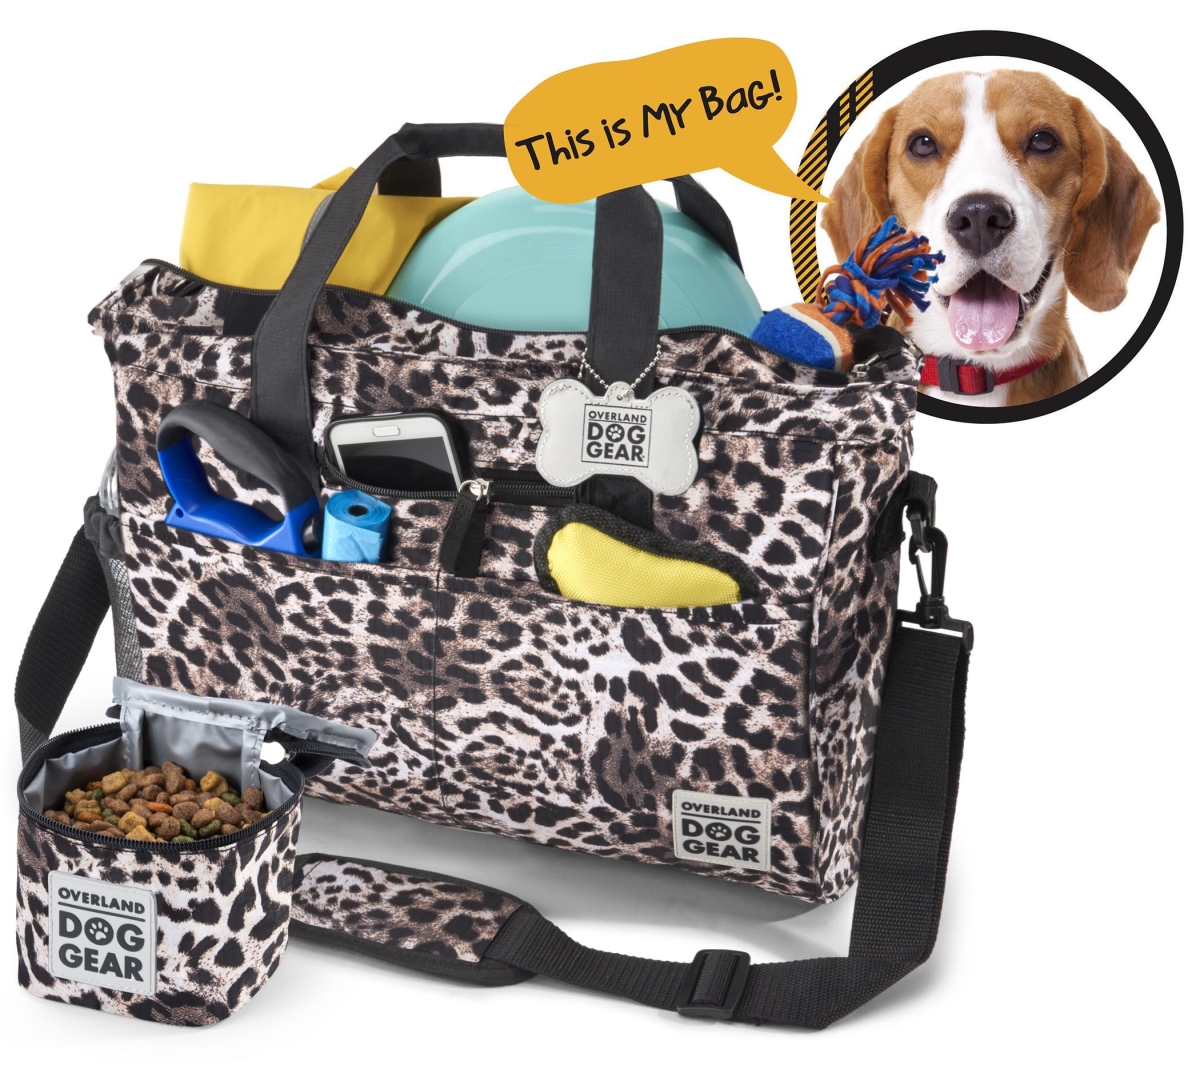 Odg12 Day Away Tote Travel Bag For Dog, Animal Print